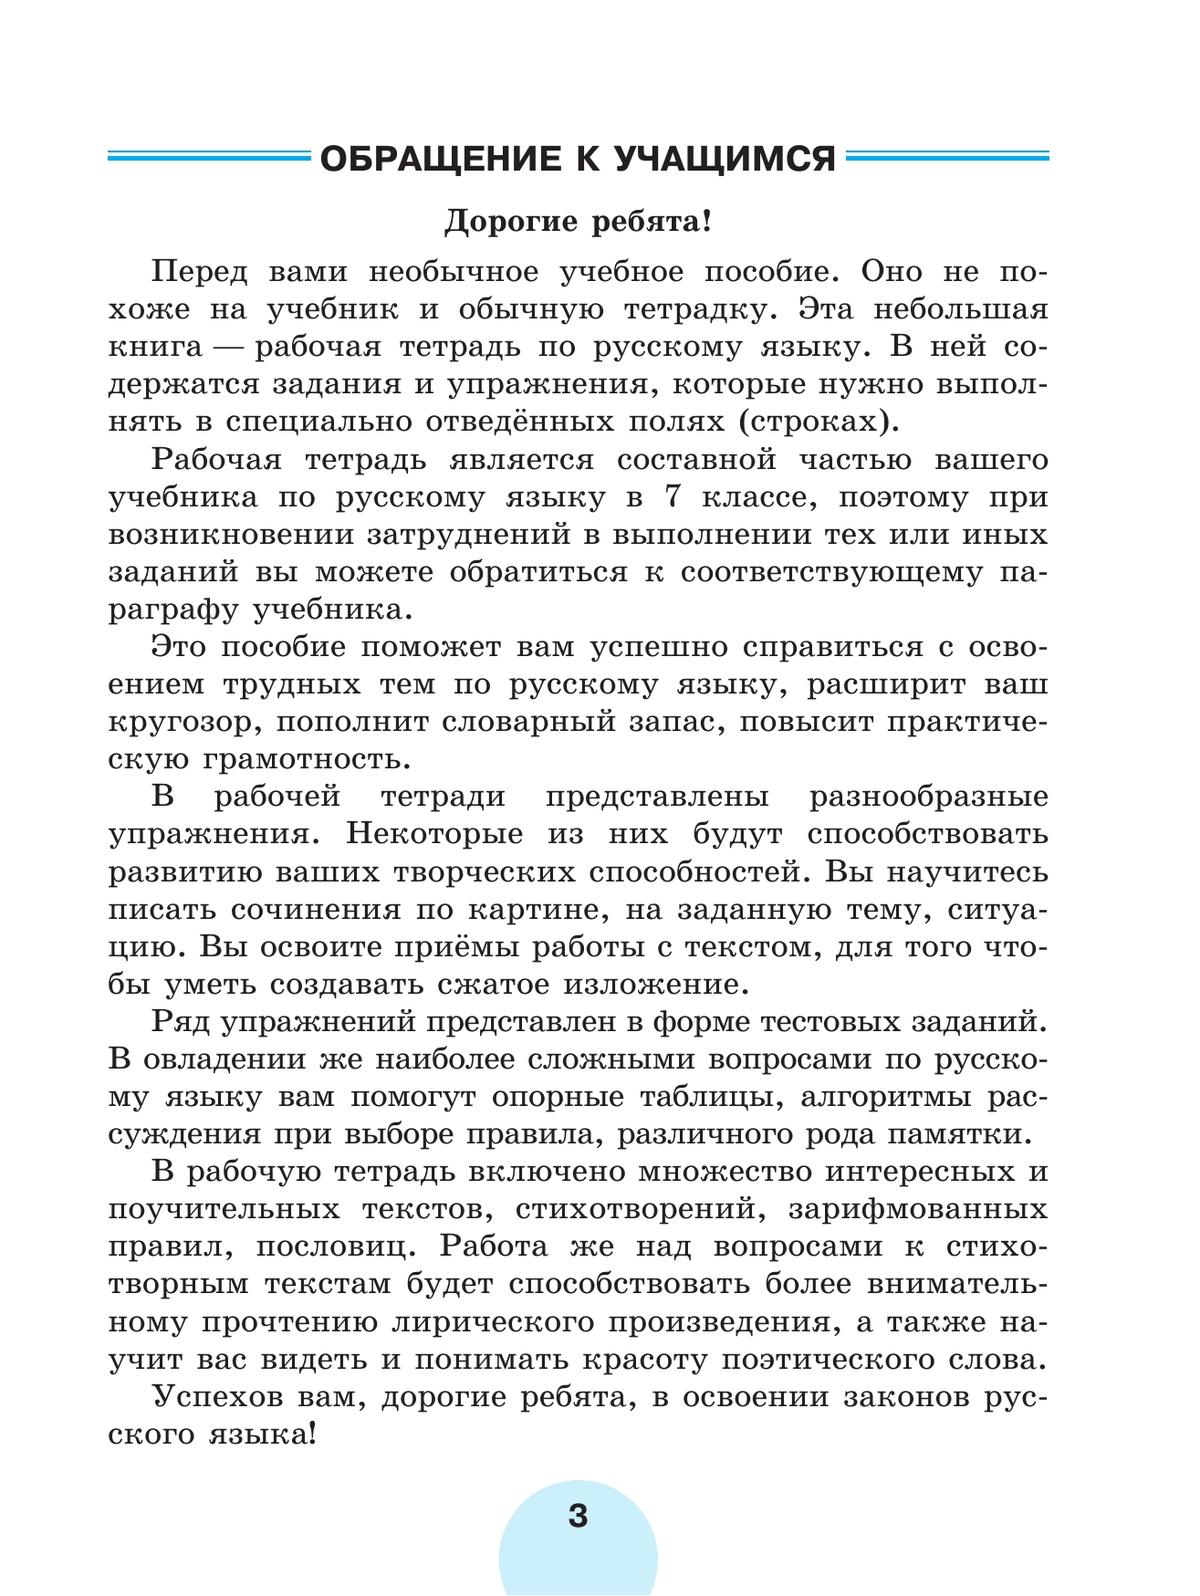 Русский язык. Рабочая тетрадь. 7 класс. В 2 ч. Часть 2 7